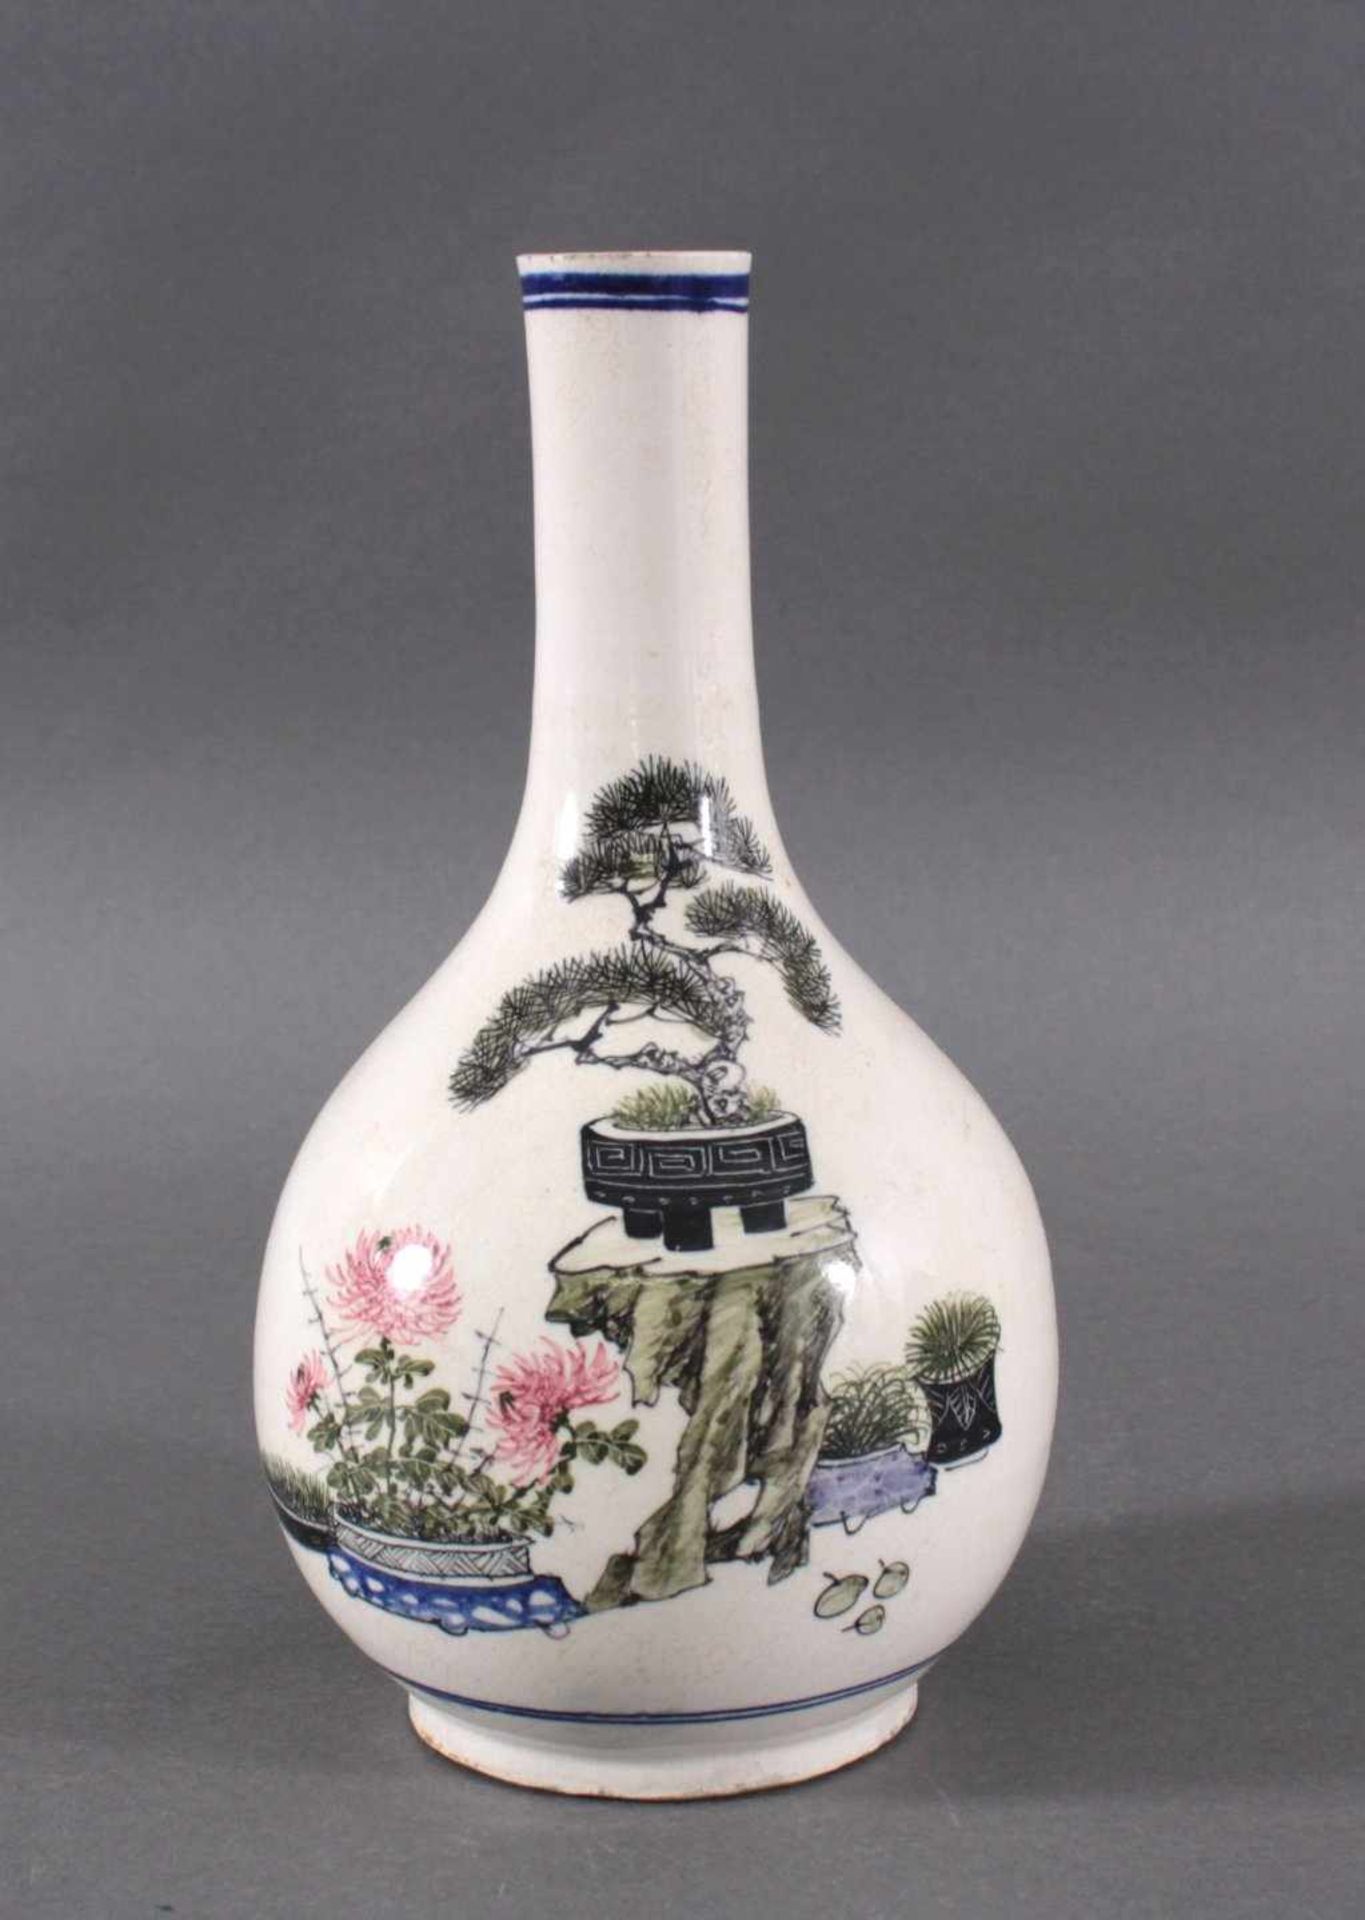 Chinesische Fayence-Vase um 1900Birnenförmige Vase, Polychrome Blumenbemalung, auf derUnterseite